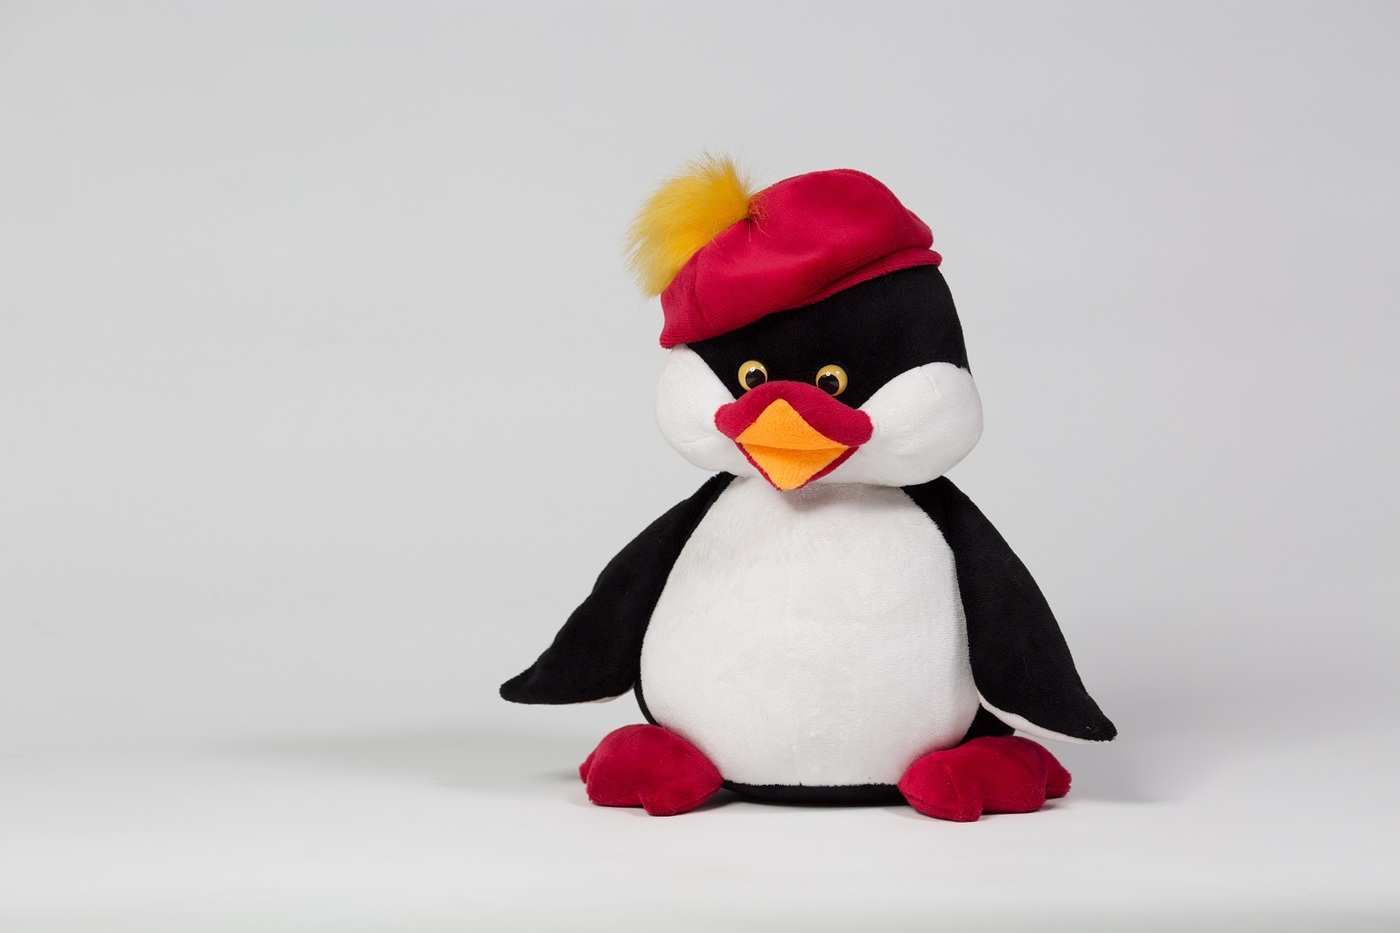 Пингвин Франсик малый / Мягкая игрушка пингвин/ Пингвинчик/ Интерьерная игр...